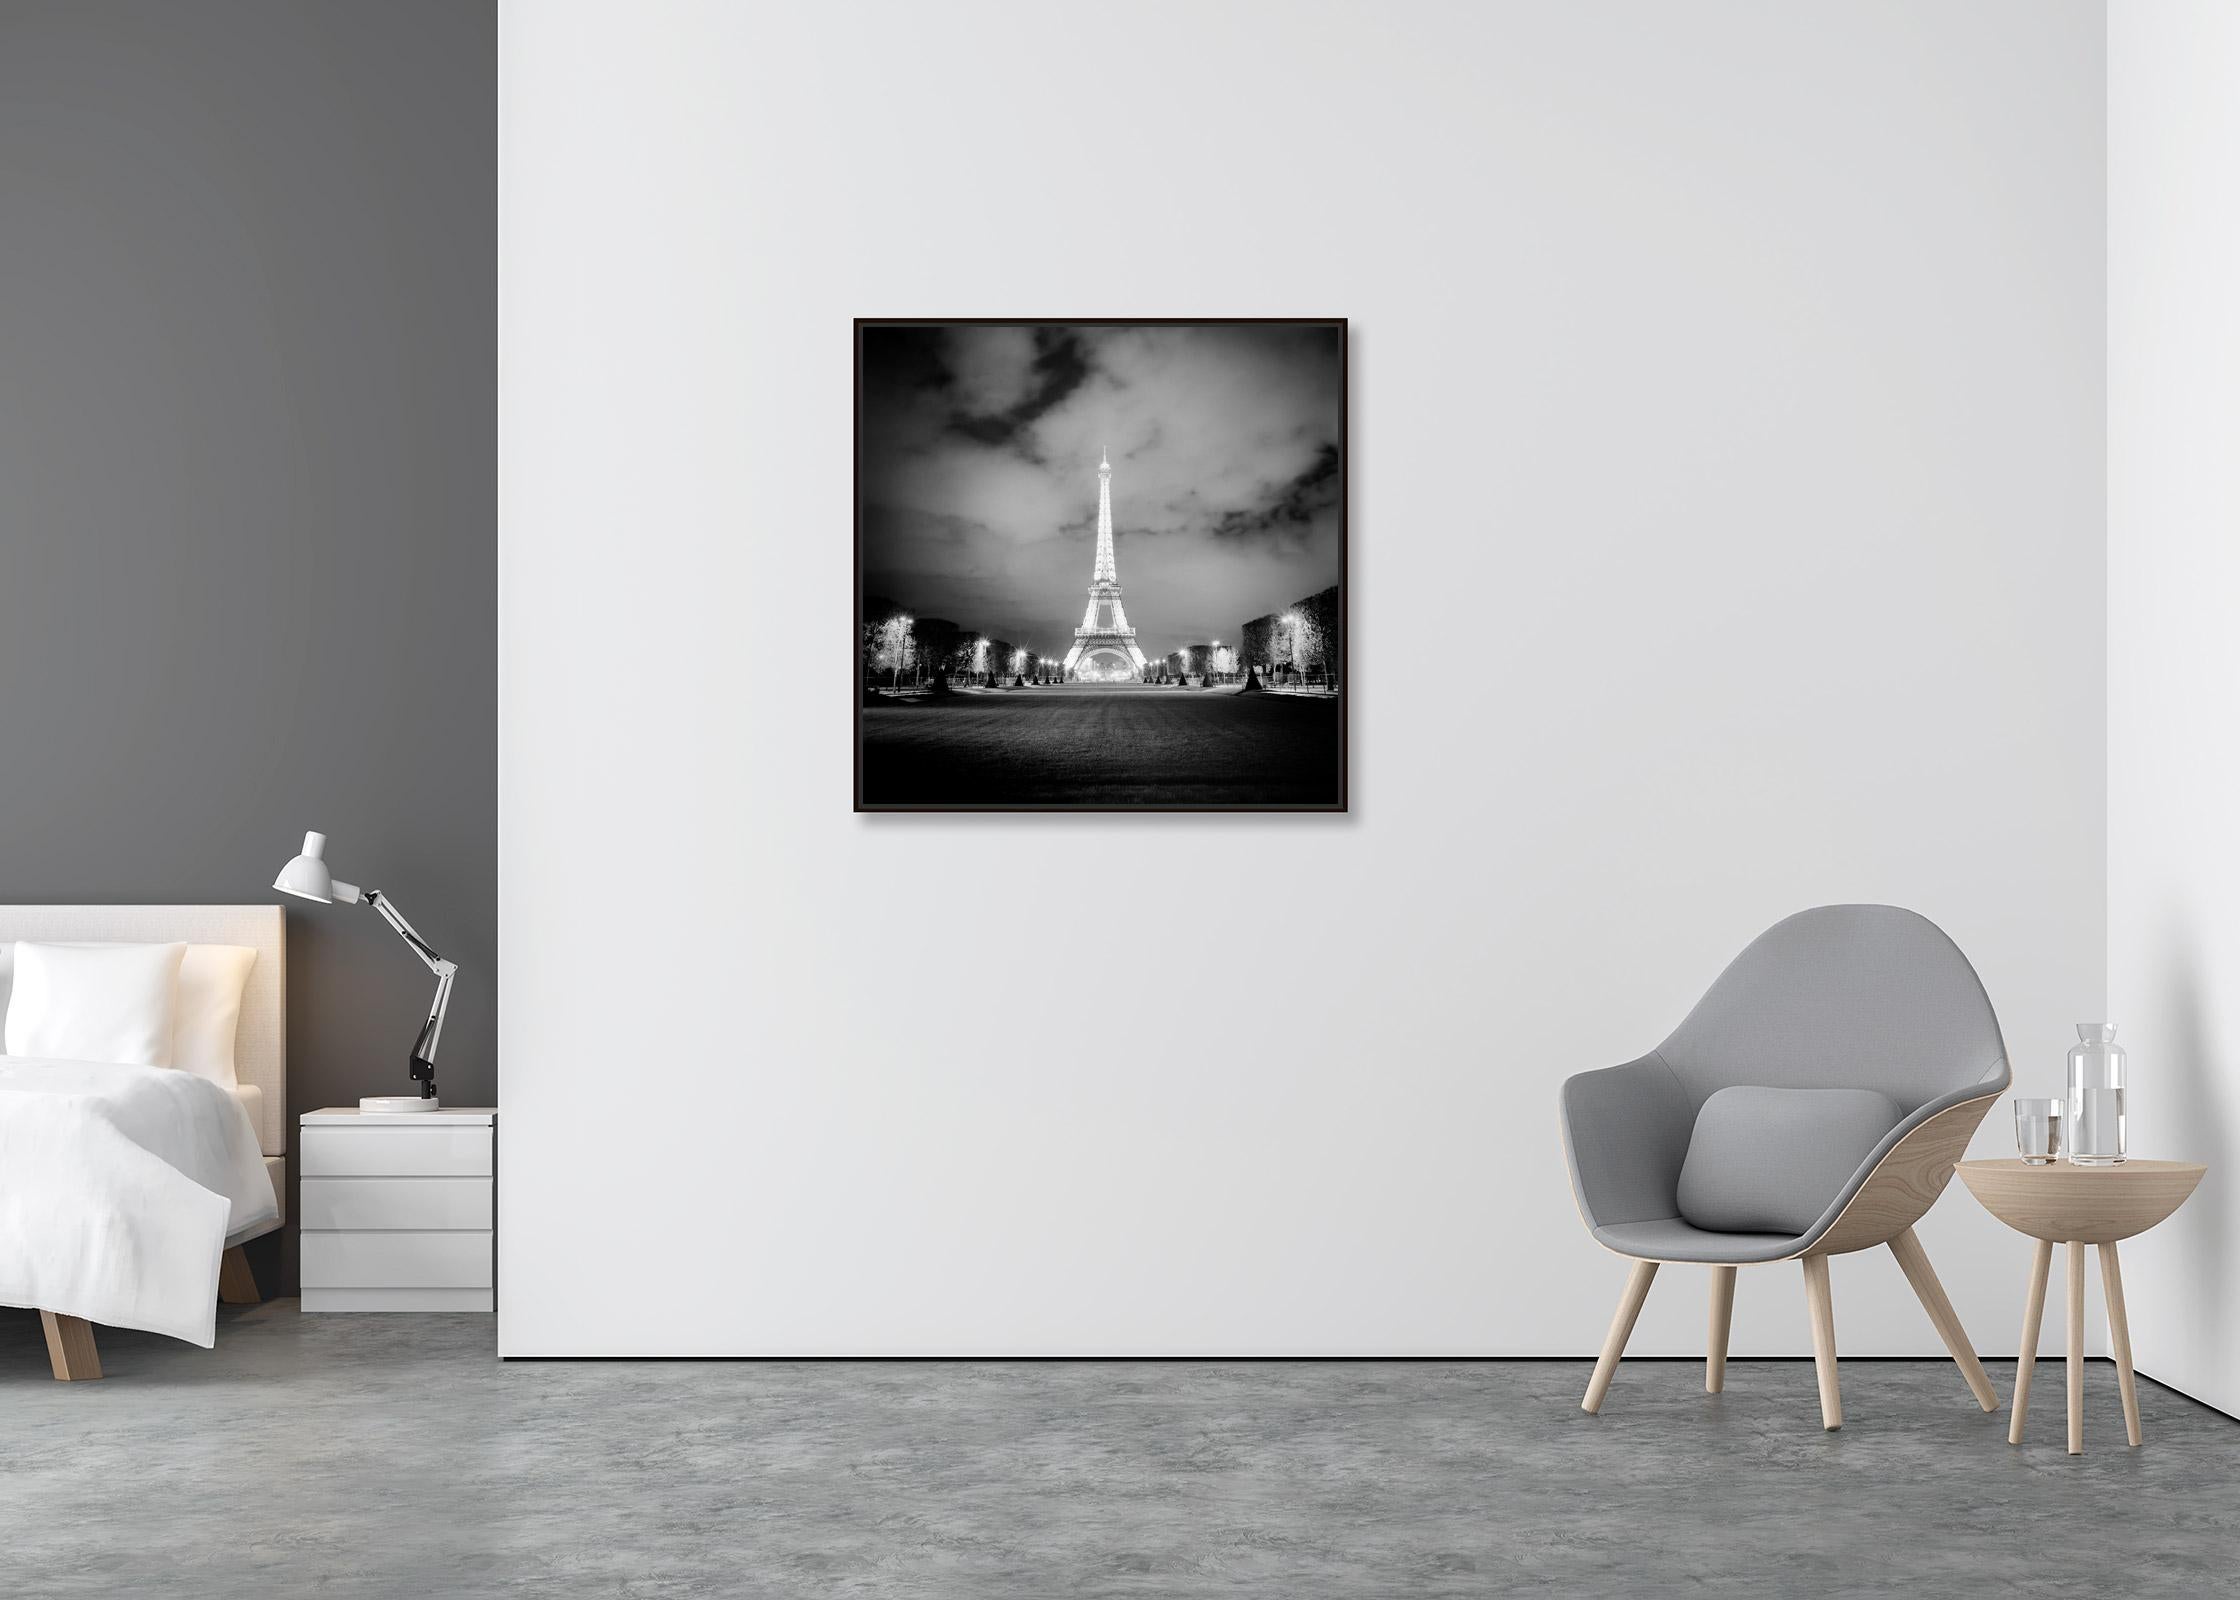 Tour Eiffel, Lights, Paris, spectacle de lumières, photographie en noir et blanc, paysage urbain - Contemporain Photograph par Gerald Berghammer